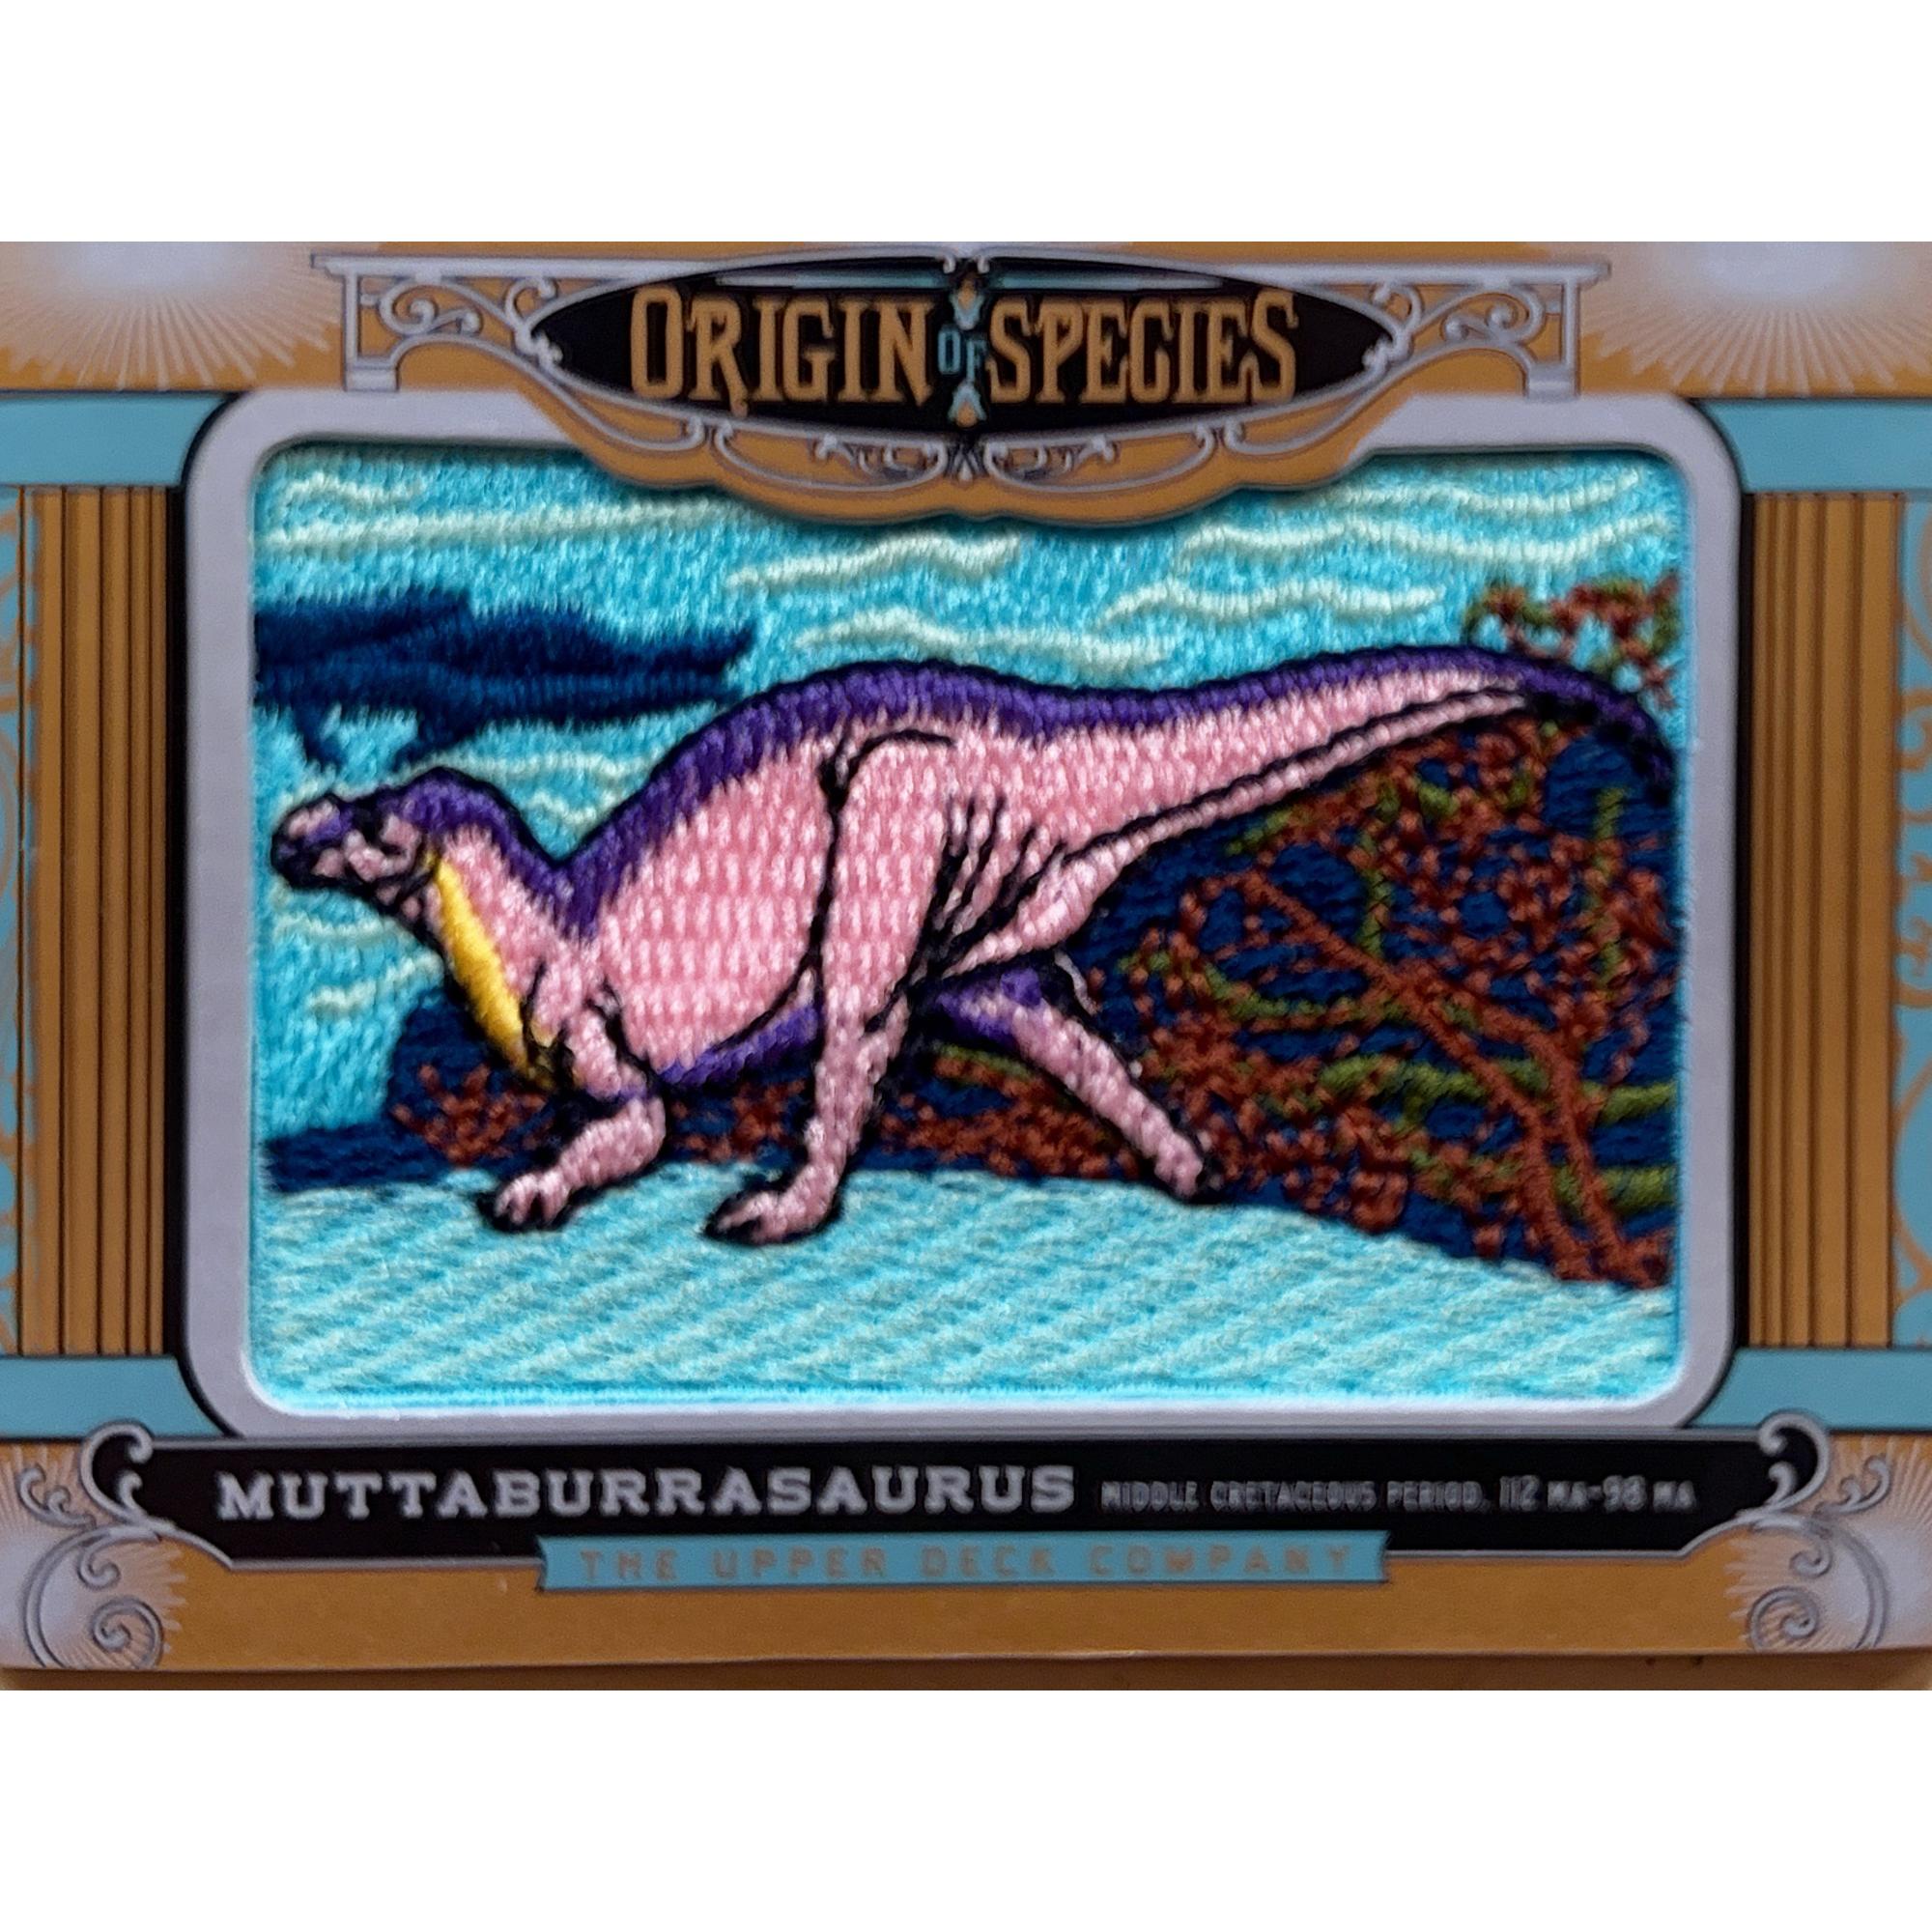 Upper deck, Muttaburrasaurus patch Prehistoric Online